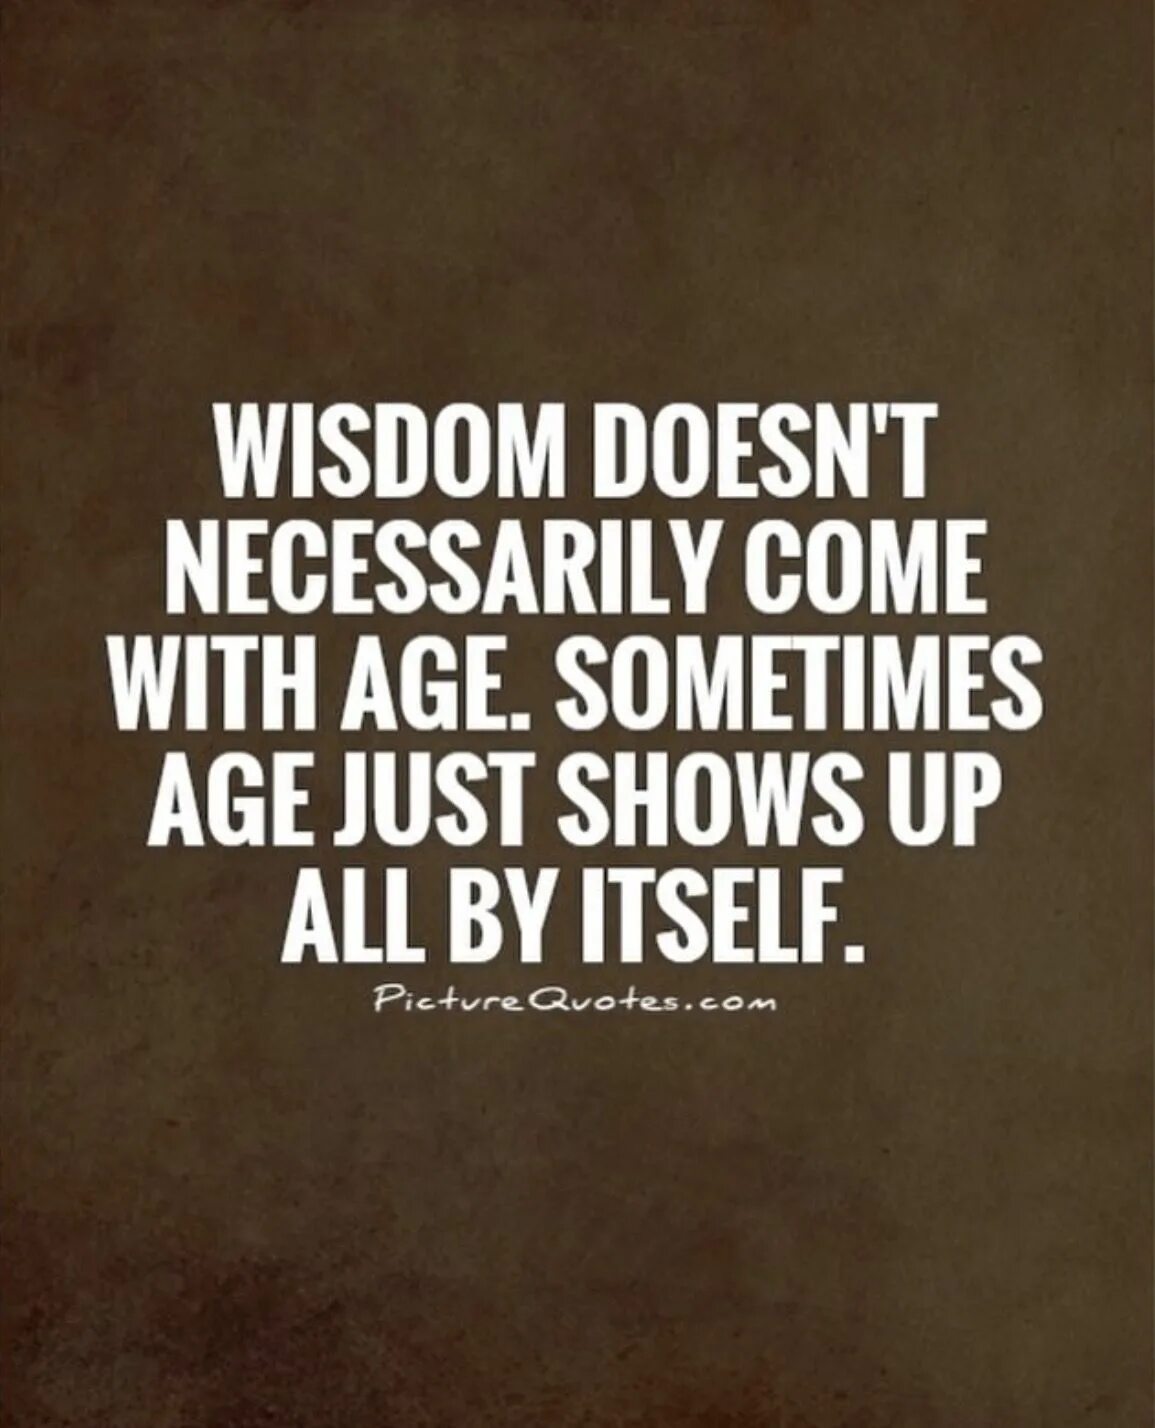 Wisdom quotes. Quotes about Wisdom. Wisdom quotes about Life. Wisdom quotes of the Day. Sometimes difficult